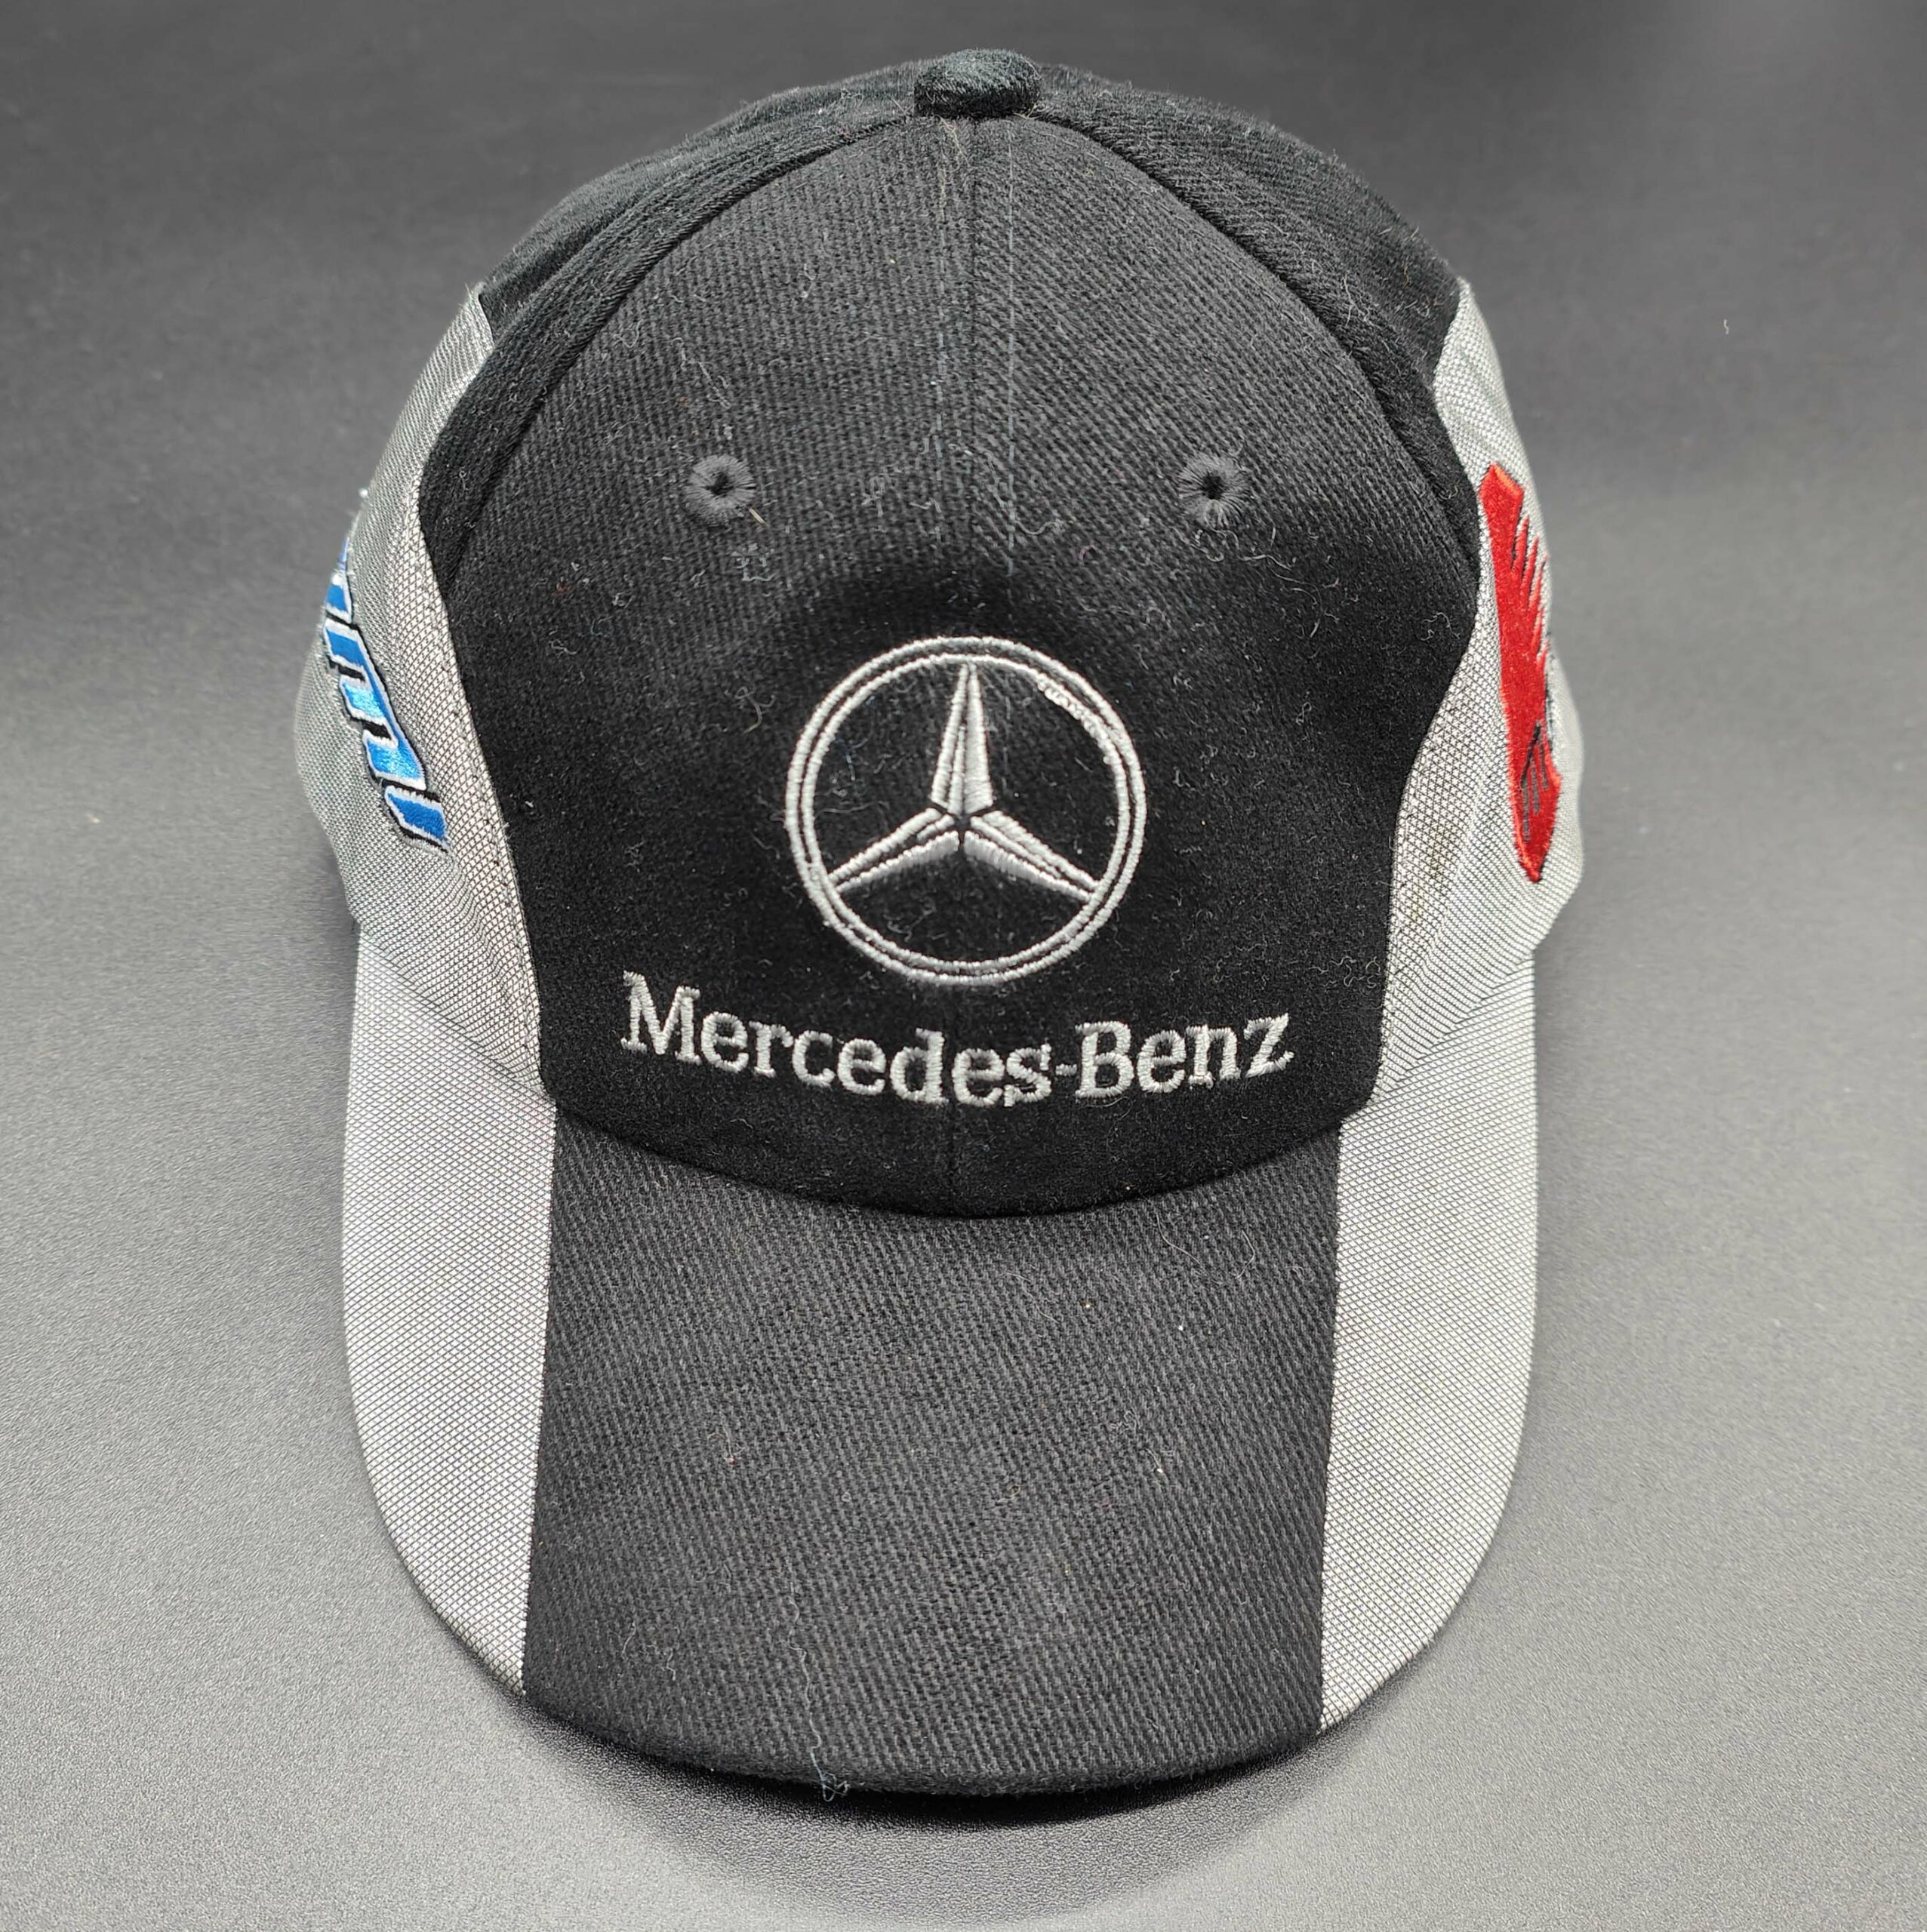 McLaren Mercedes cappellino Raikkonen / Montoya 2005 » BOLA